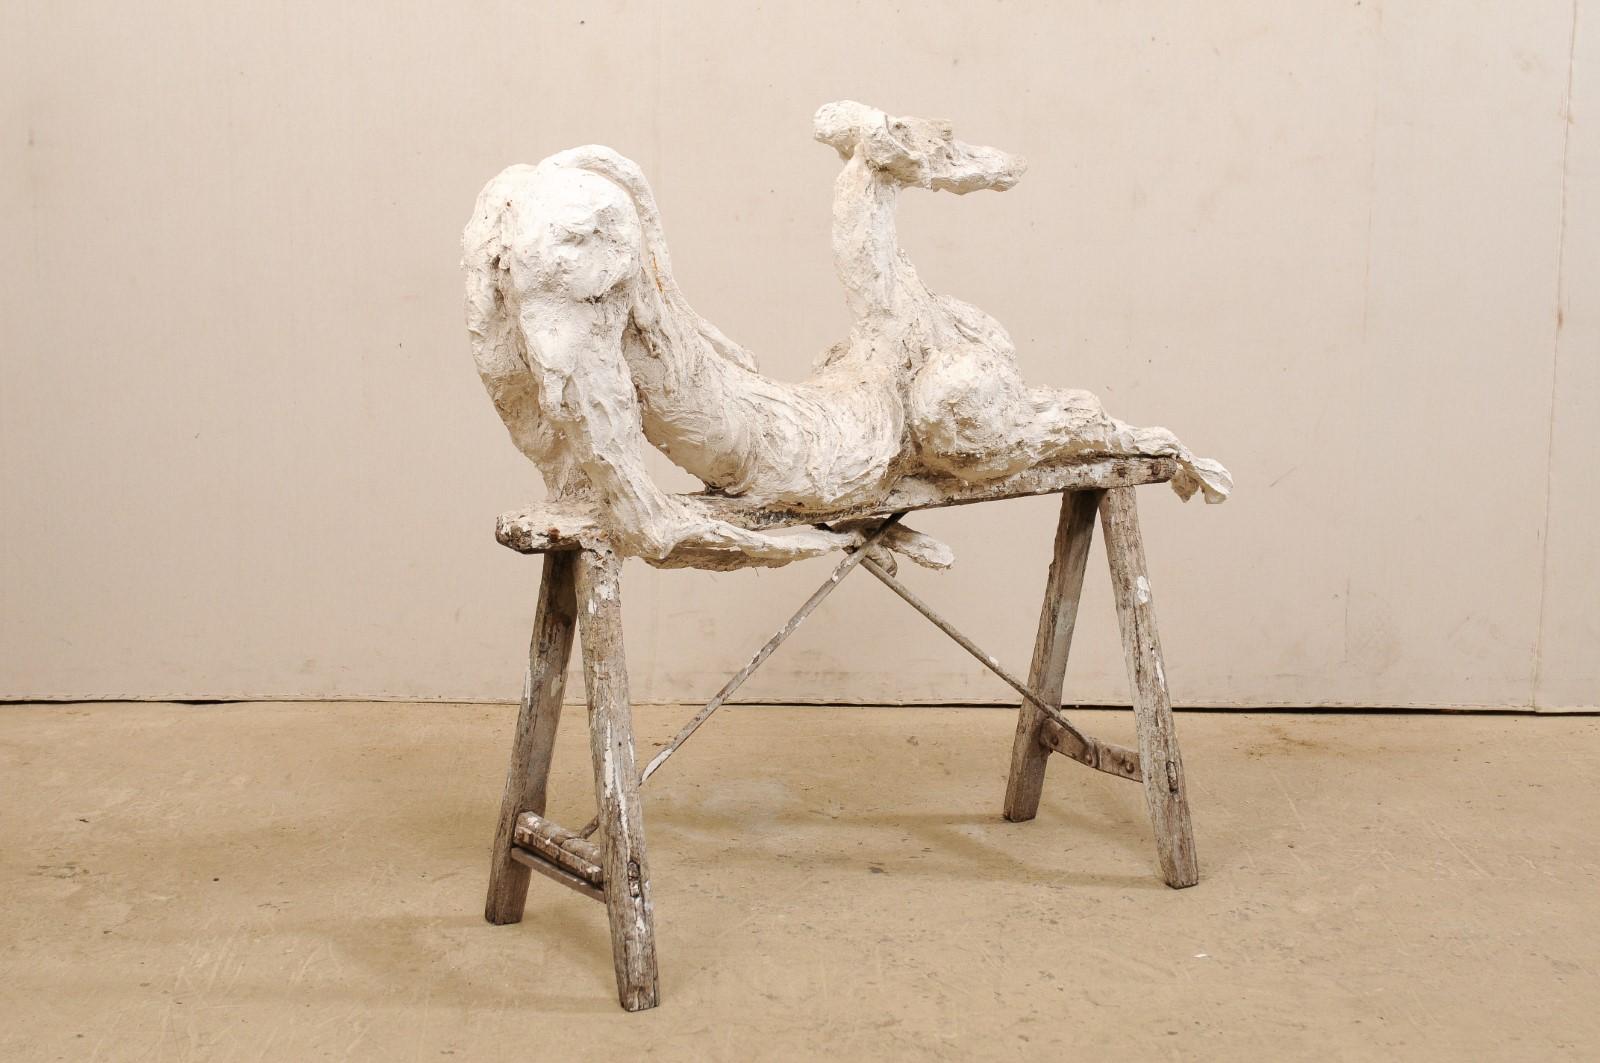 Large French Greyhound Sculpture Poised on Sawhorse Leg Base 1